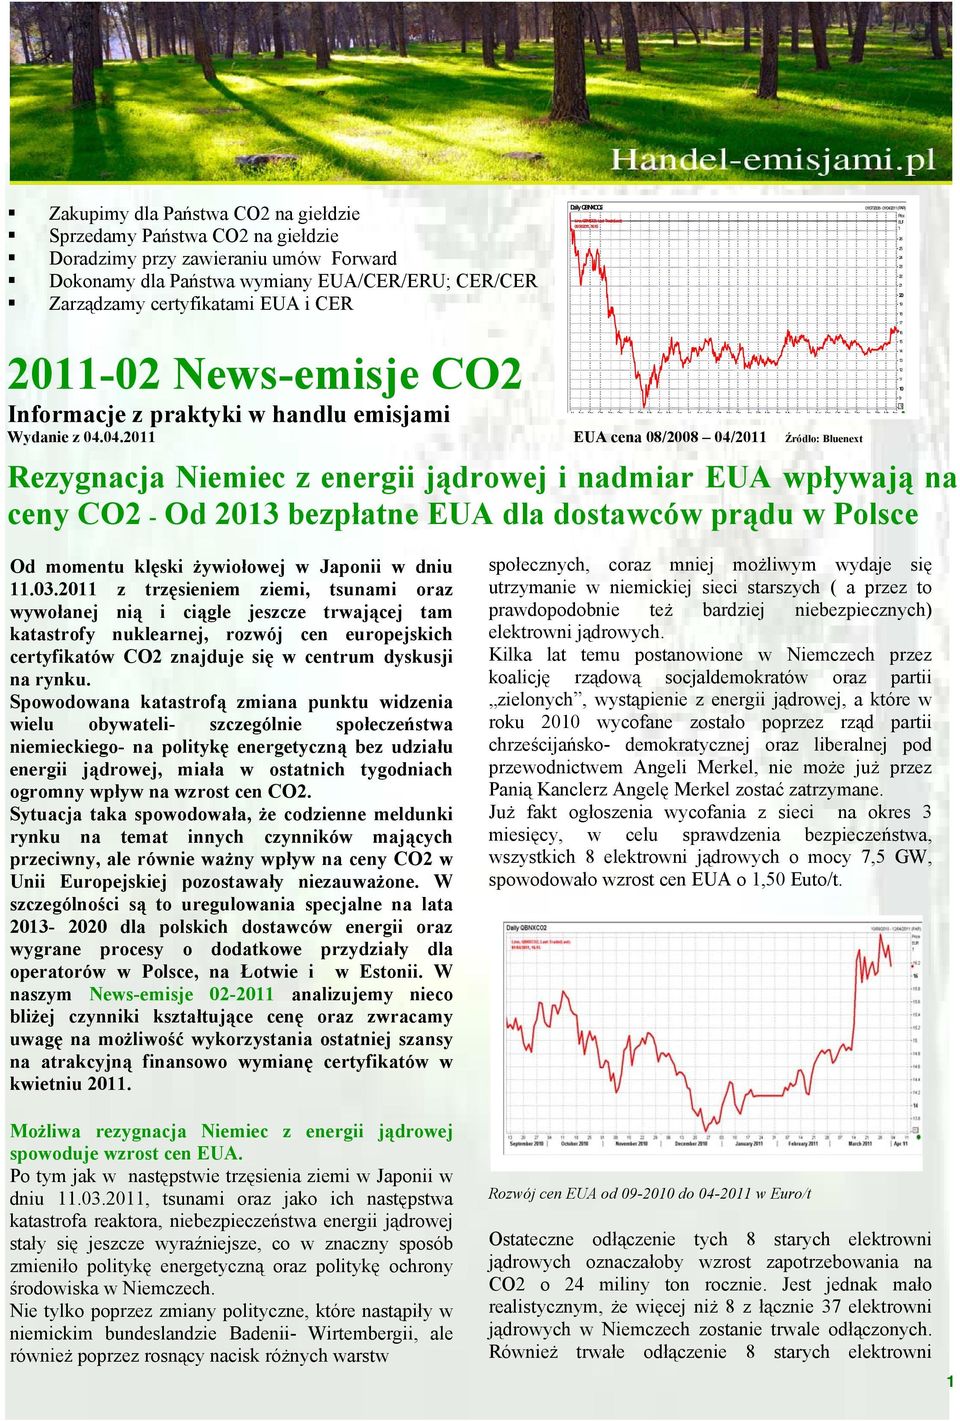 04.2011 EUA cena 08/2008 04/2011 Źrόdło: Bluenext Rezygnacja Niemiec z energii jądrowej i nadmiar EUA wpływają na ceny CO2 - Od 2013 bezpłatne EUA dla dostawców prądu w Polsce Daily QBNXCO2 Line,